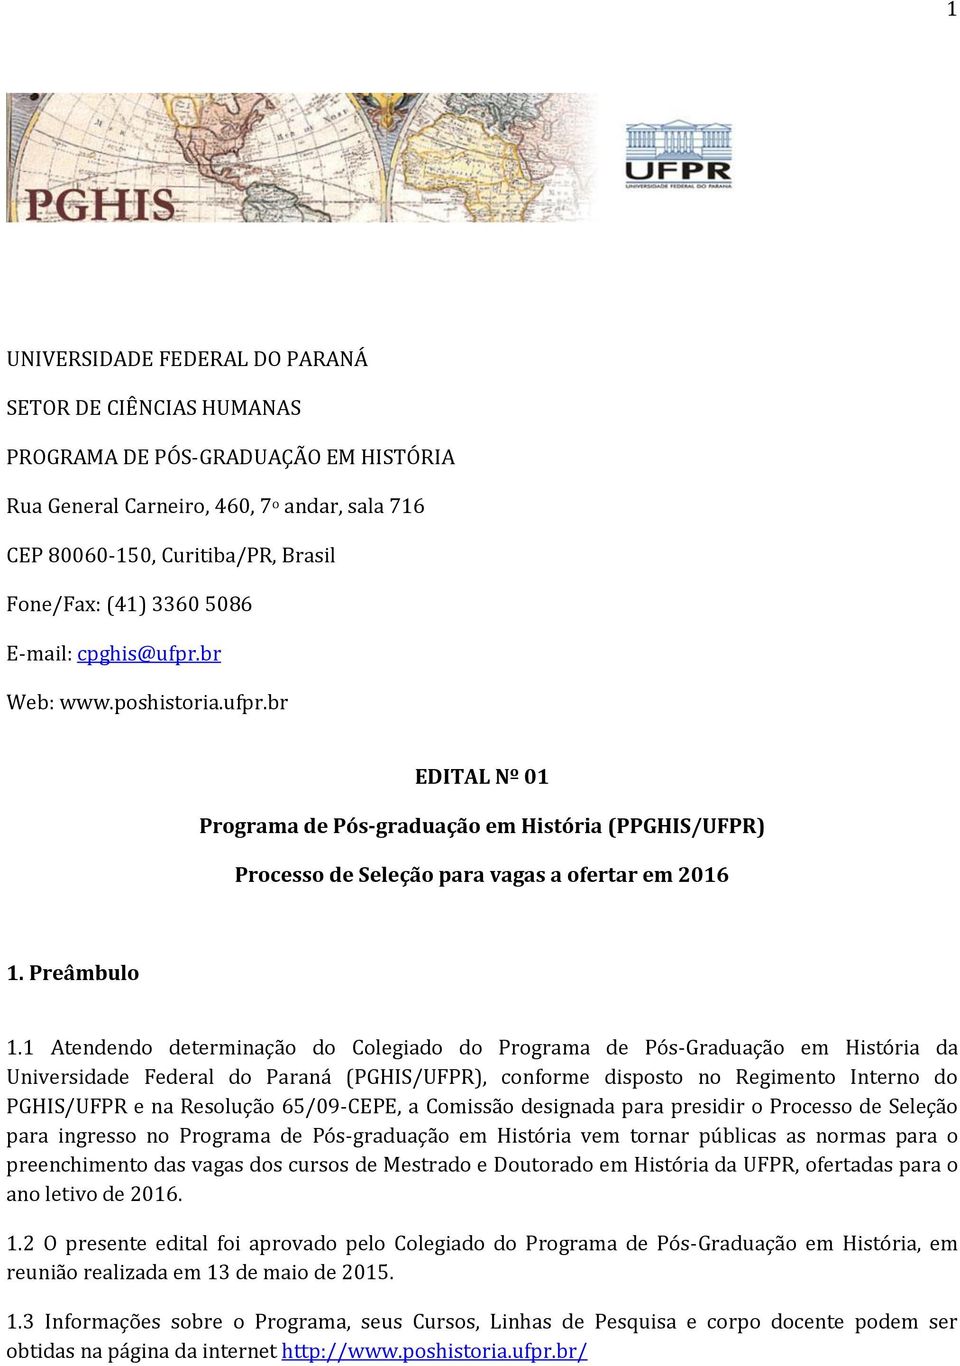 1 Atendendo determinação do Colegiado do Programa de Pós-Graduação em História da Universidade Federal do Paraná (PGHIS/UFPR), conforme disposto no Regimento Interno do PGHIS/UFPR e na Resolução